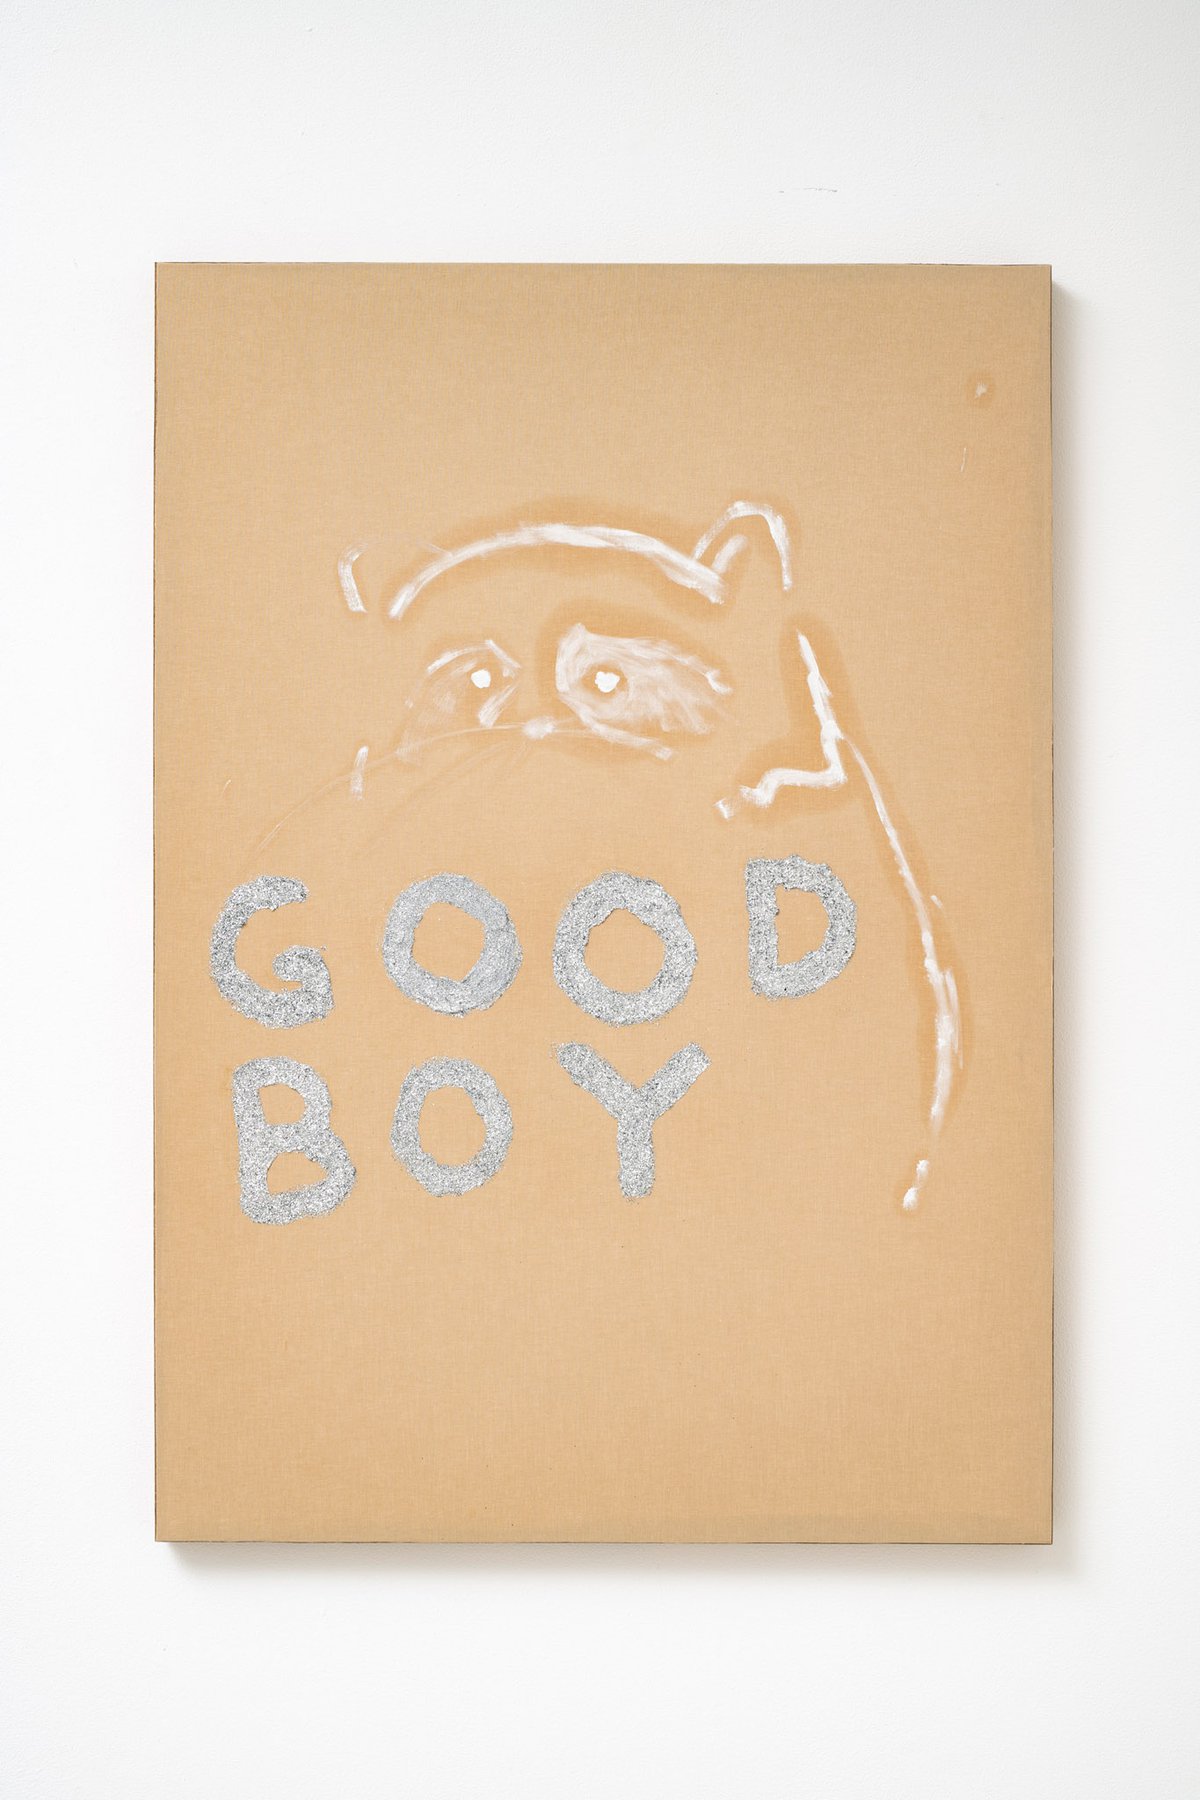 Philipp TimischlGOOD BOY (Brown, Titanium, White, Silver), 2019Canvas on wooden board, oil, glitter100 x 70 x 4 cm